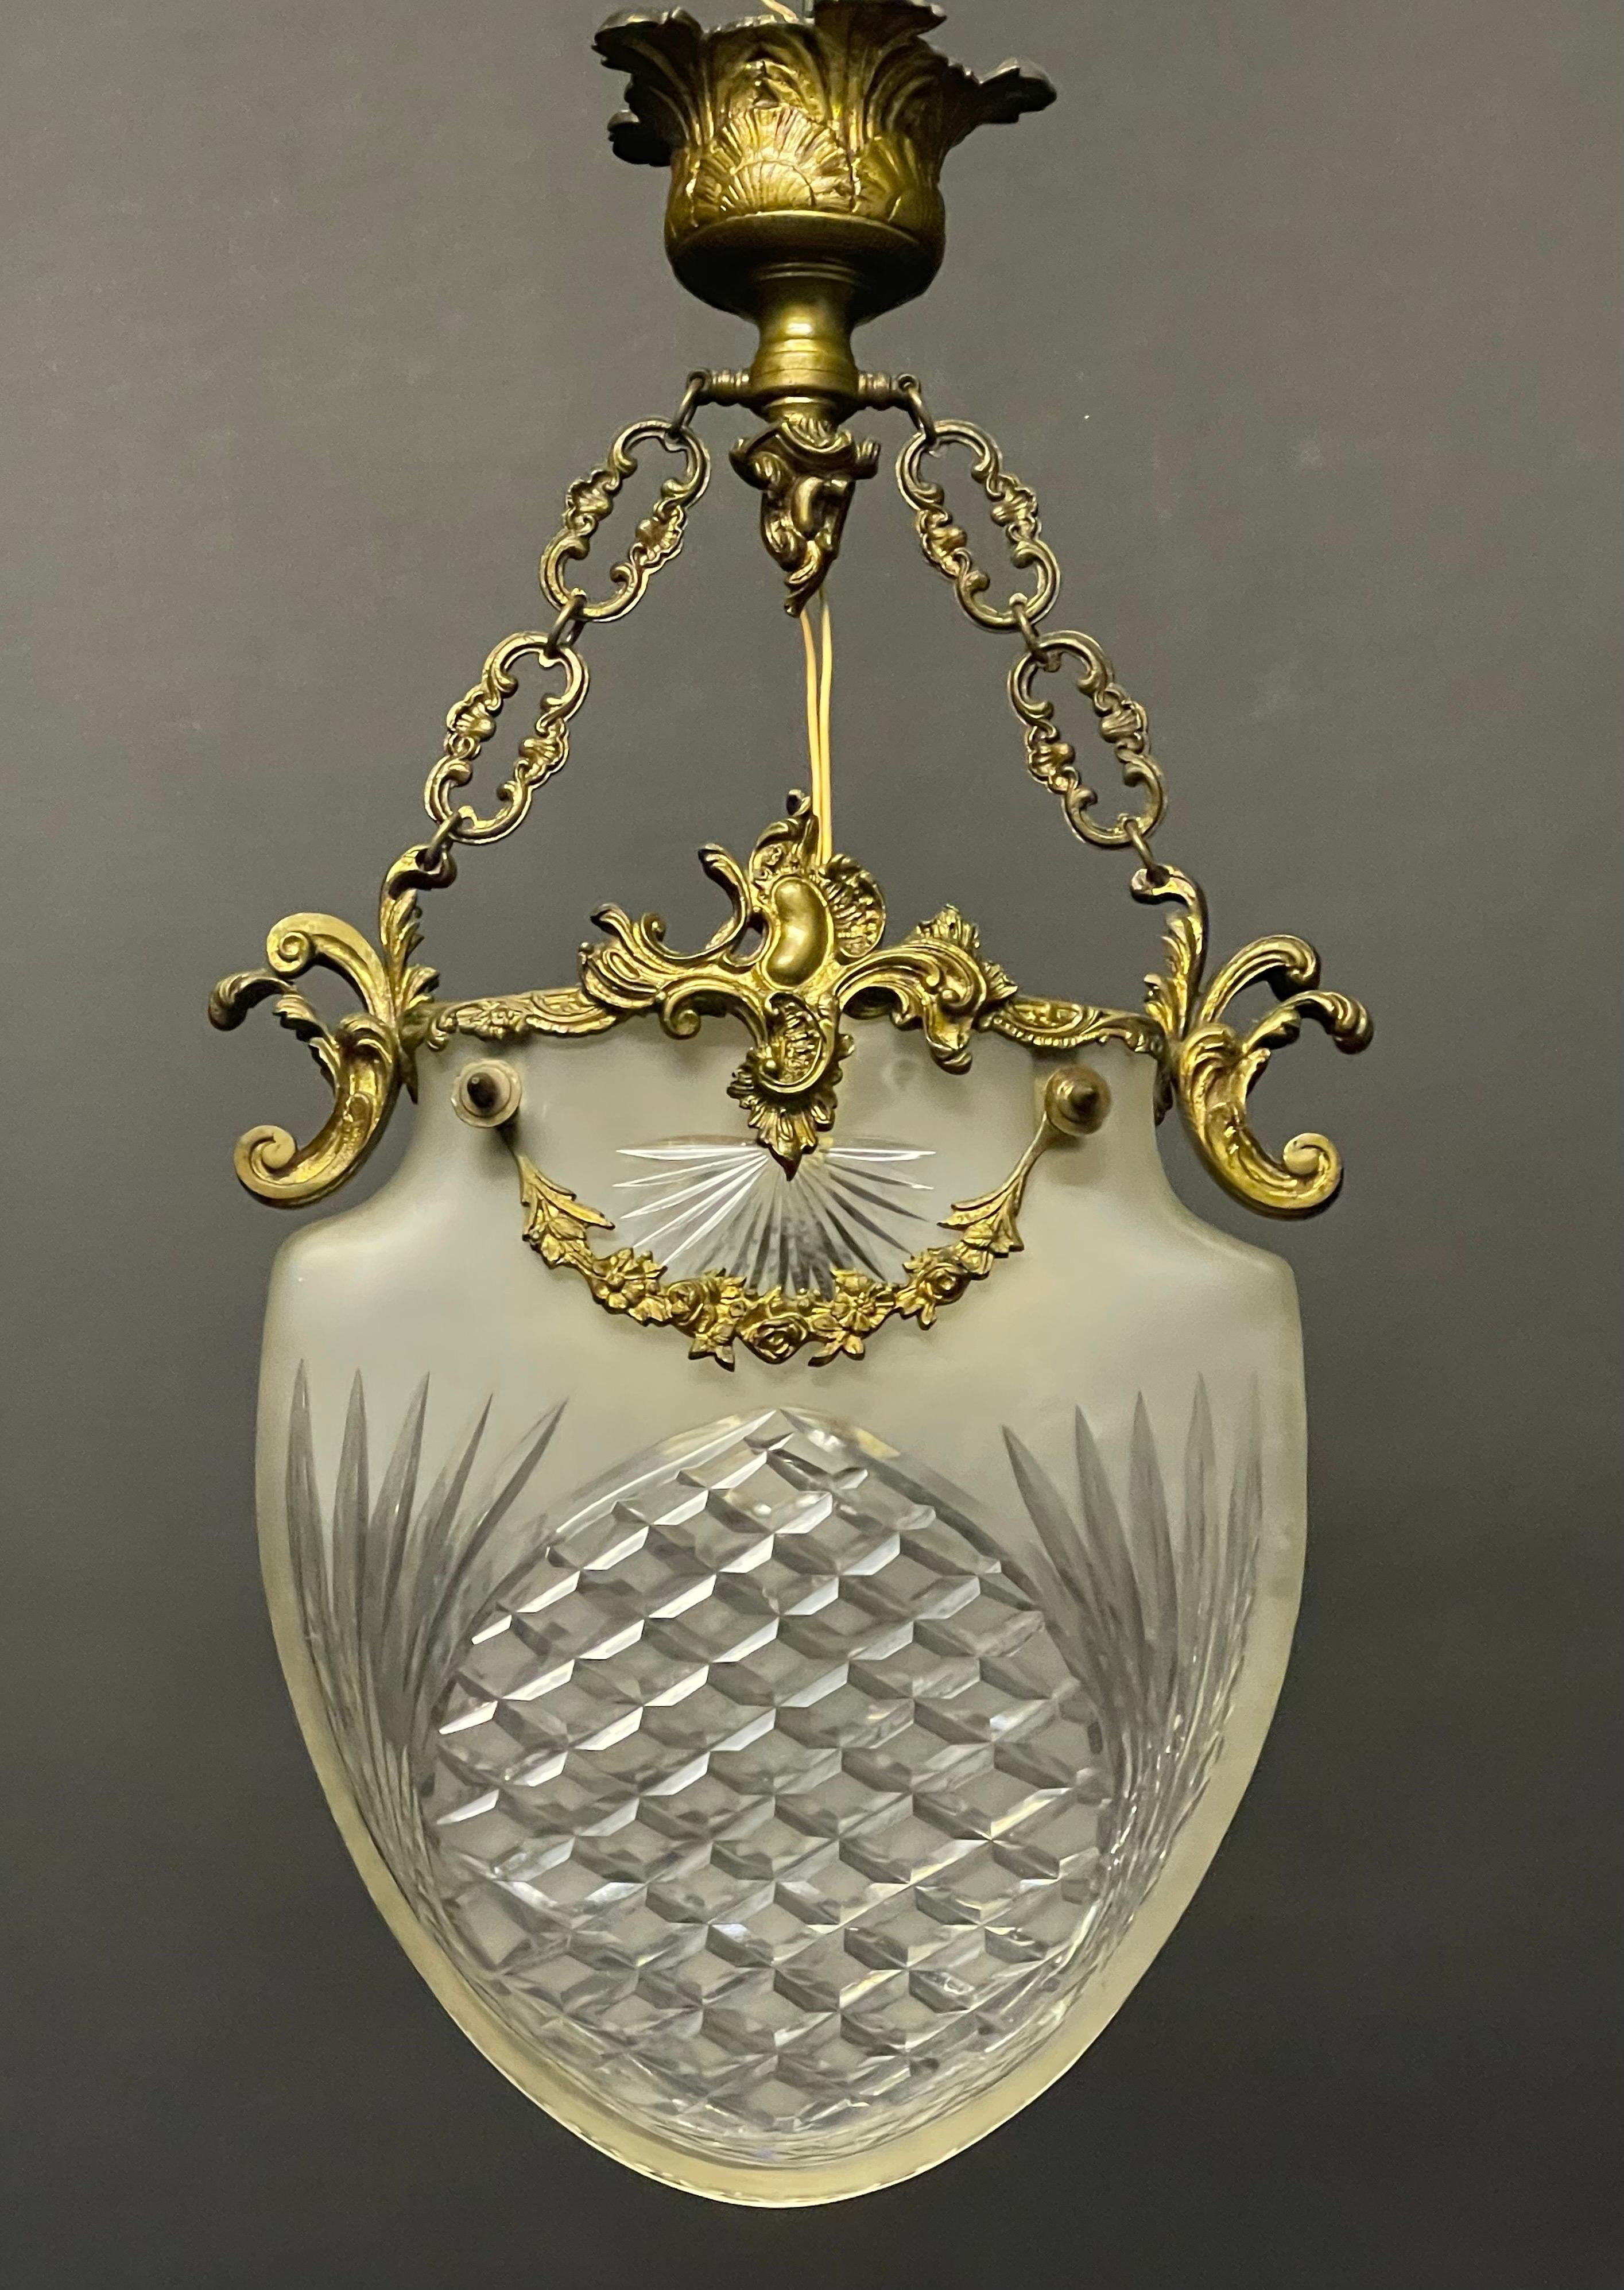 Ein wunderschöner und einzigartiger Jugendstil-Anhänger aus Bronze und geschliffenem Glas, Frankreich, um 1900.
Sockel: 1 x E27 oder E26 für Standard-Schraubglühlampen.


